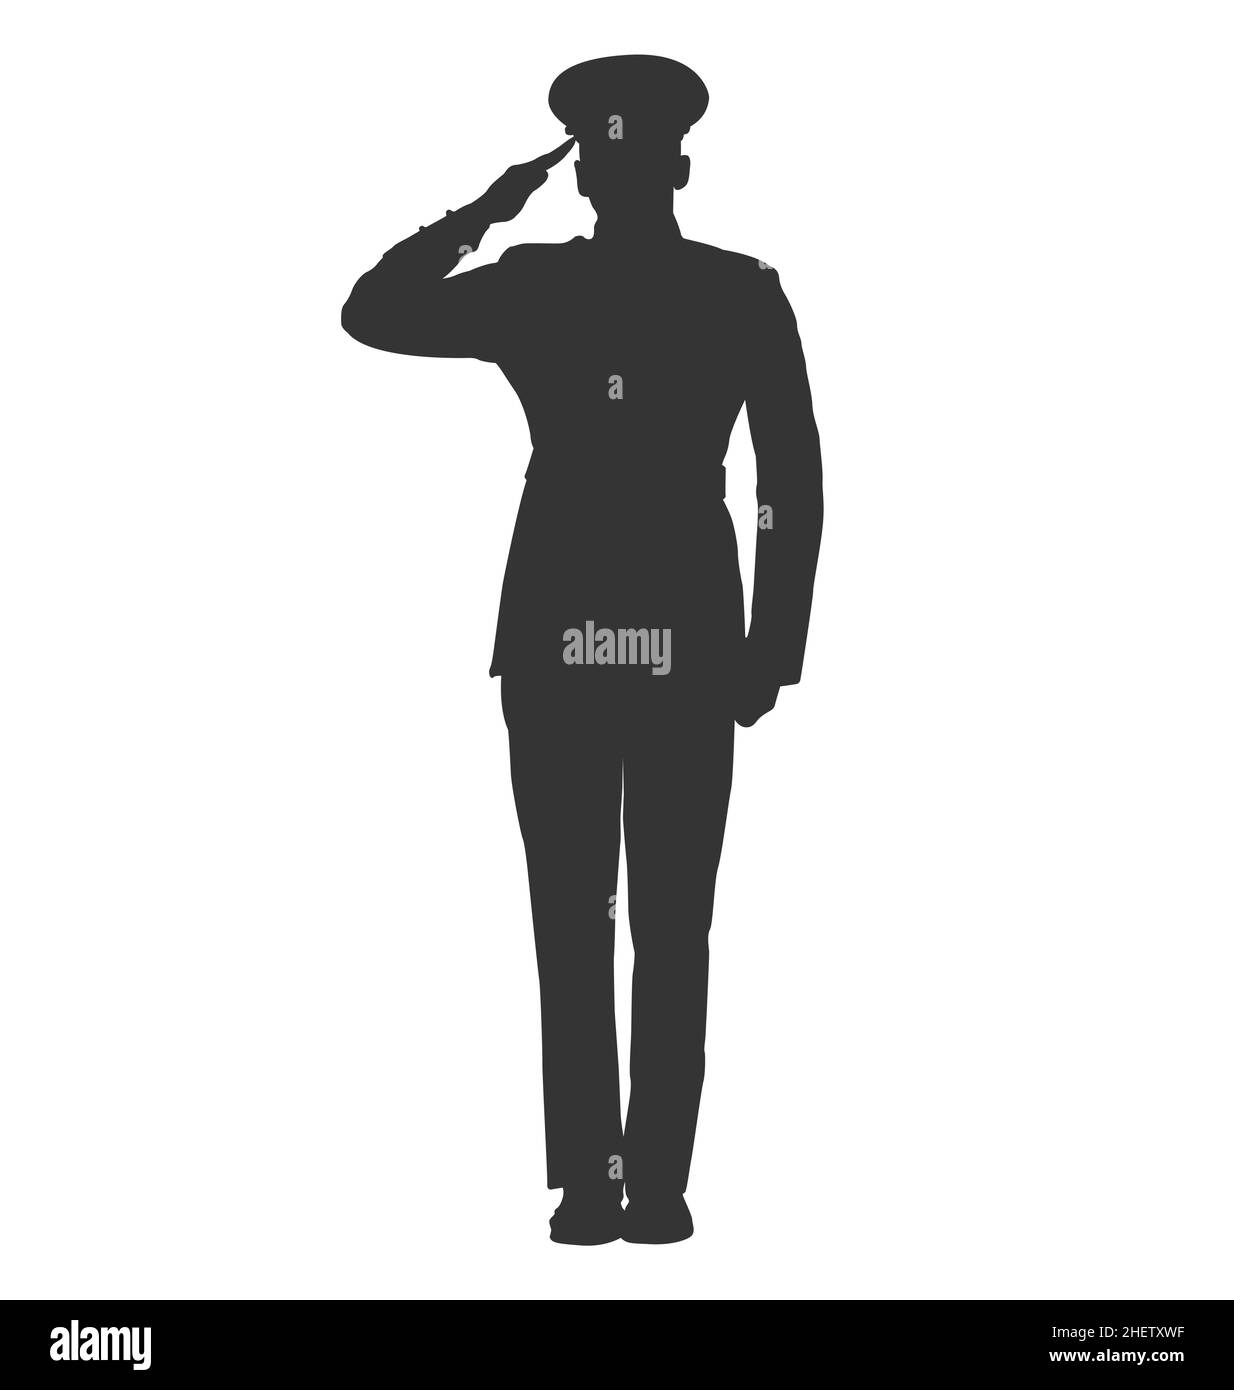 police militaire un soldat de la marine de la force aérienne salue le vecteur de silhouette sur fond blanc Illustration de Vecteur